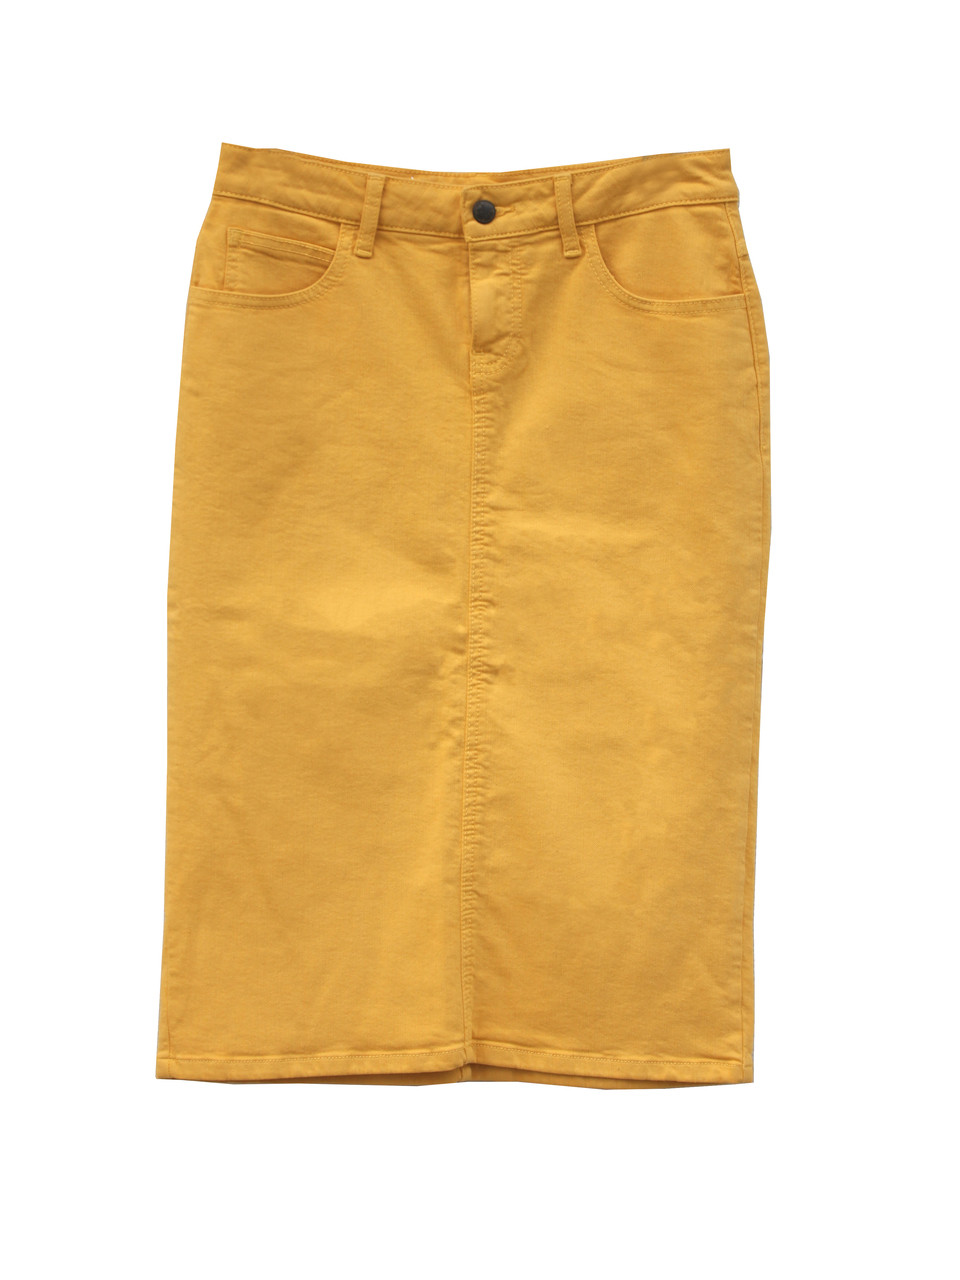 Colored Denim Skirt - Vibrant Mustard 